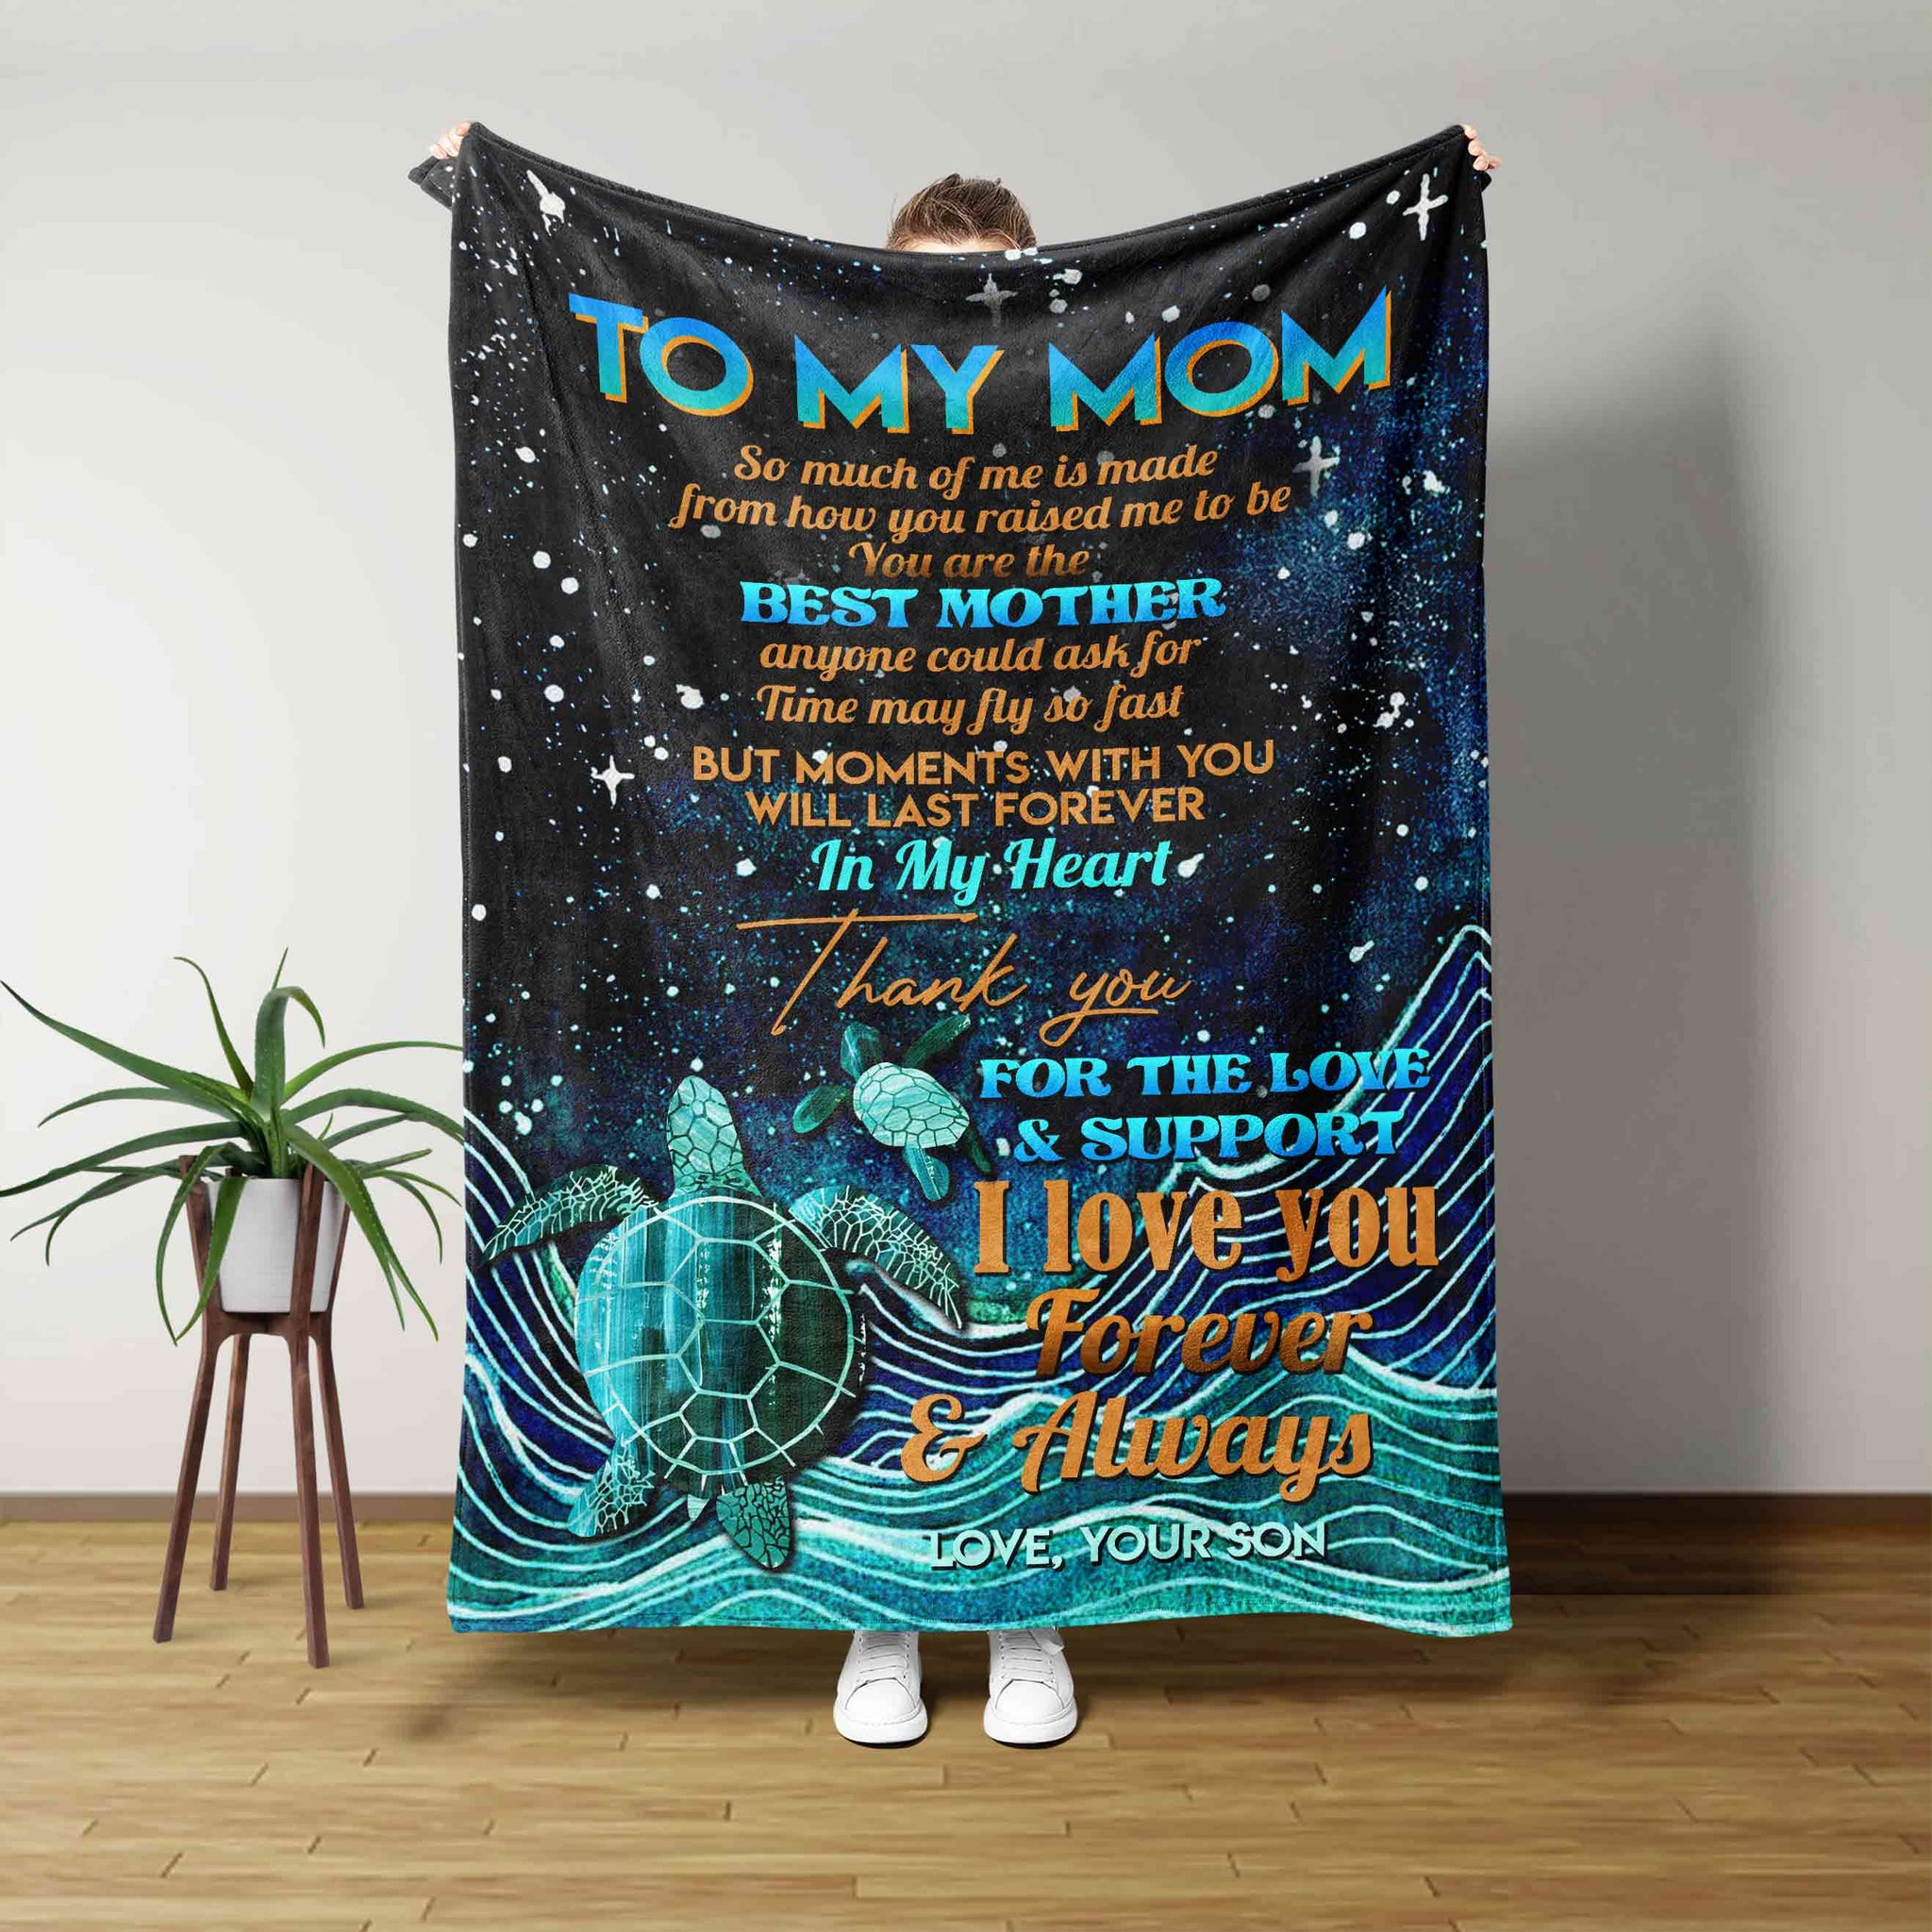 To My Mom Blanket, Mom Blanket, Turtle Blanket, Custom Name Blanket, Family Blanket, Gift Blanket